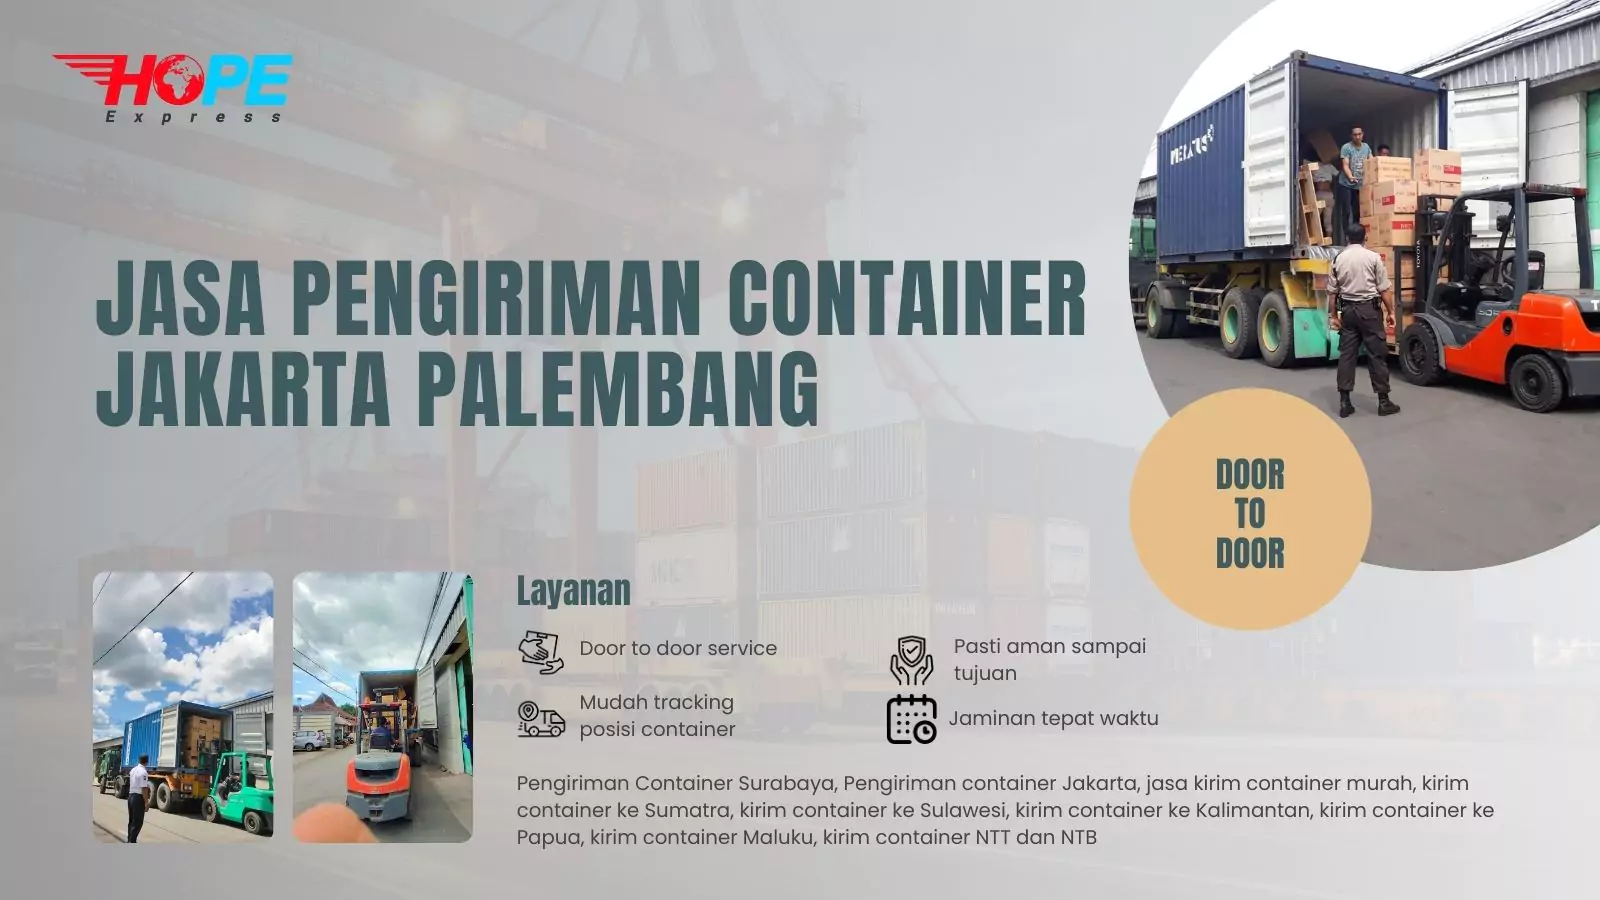 Jasa Pengiriman Container Jakarta Palembang